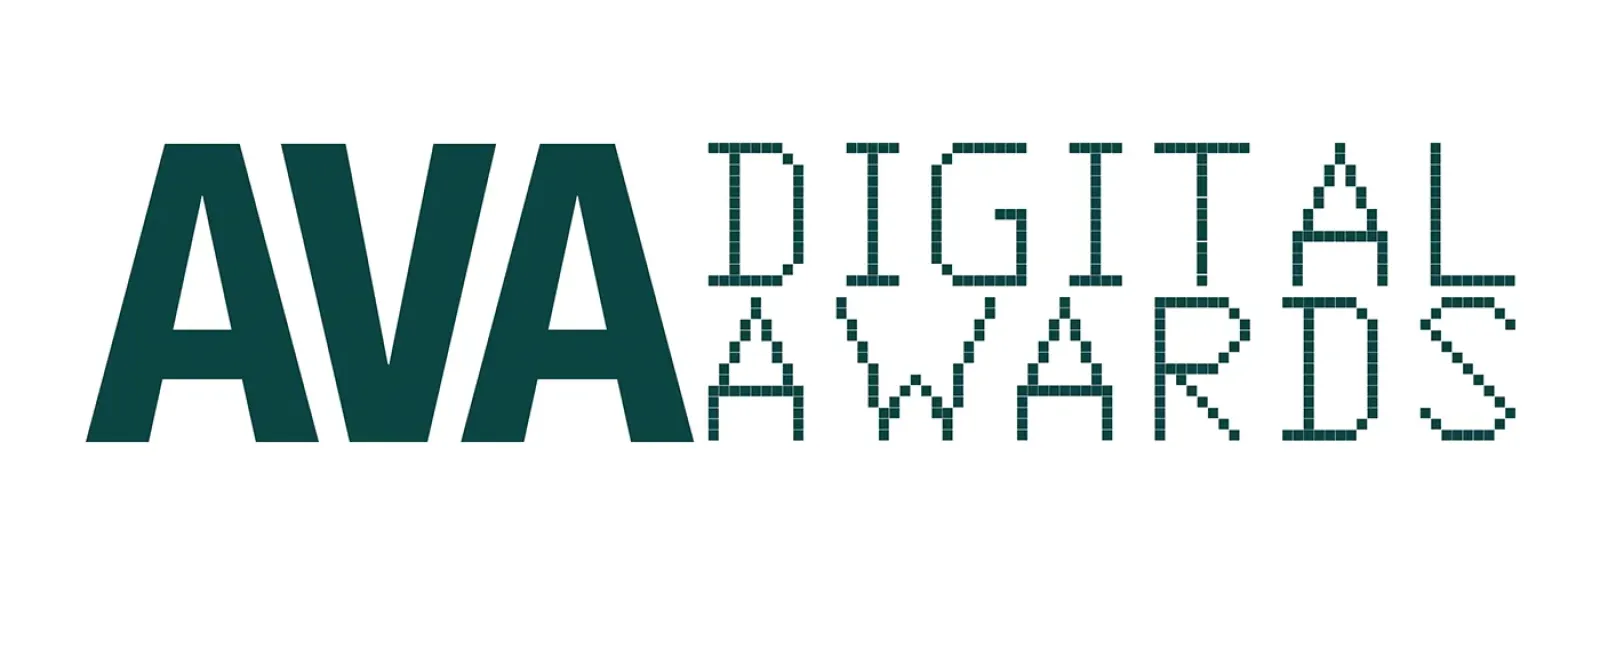 DynamiX Named 2018's Most Awarded, Wins 37 AVA Awards